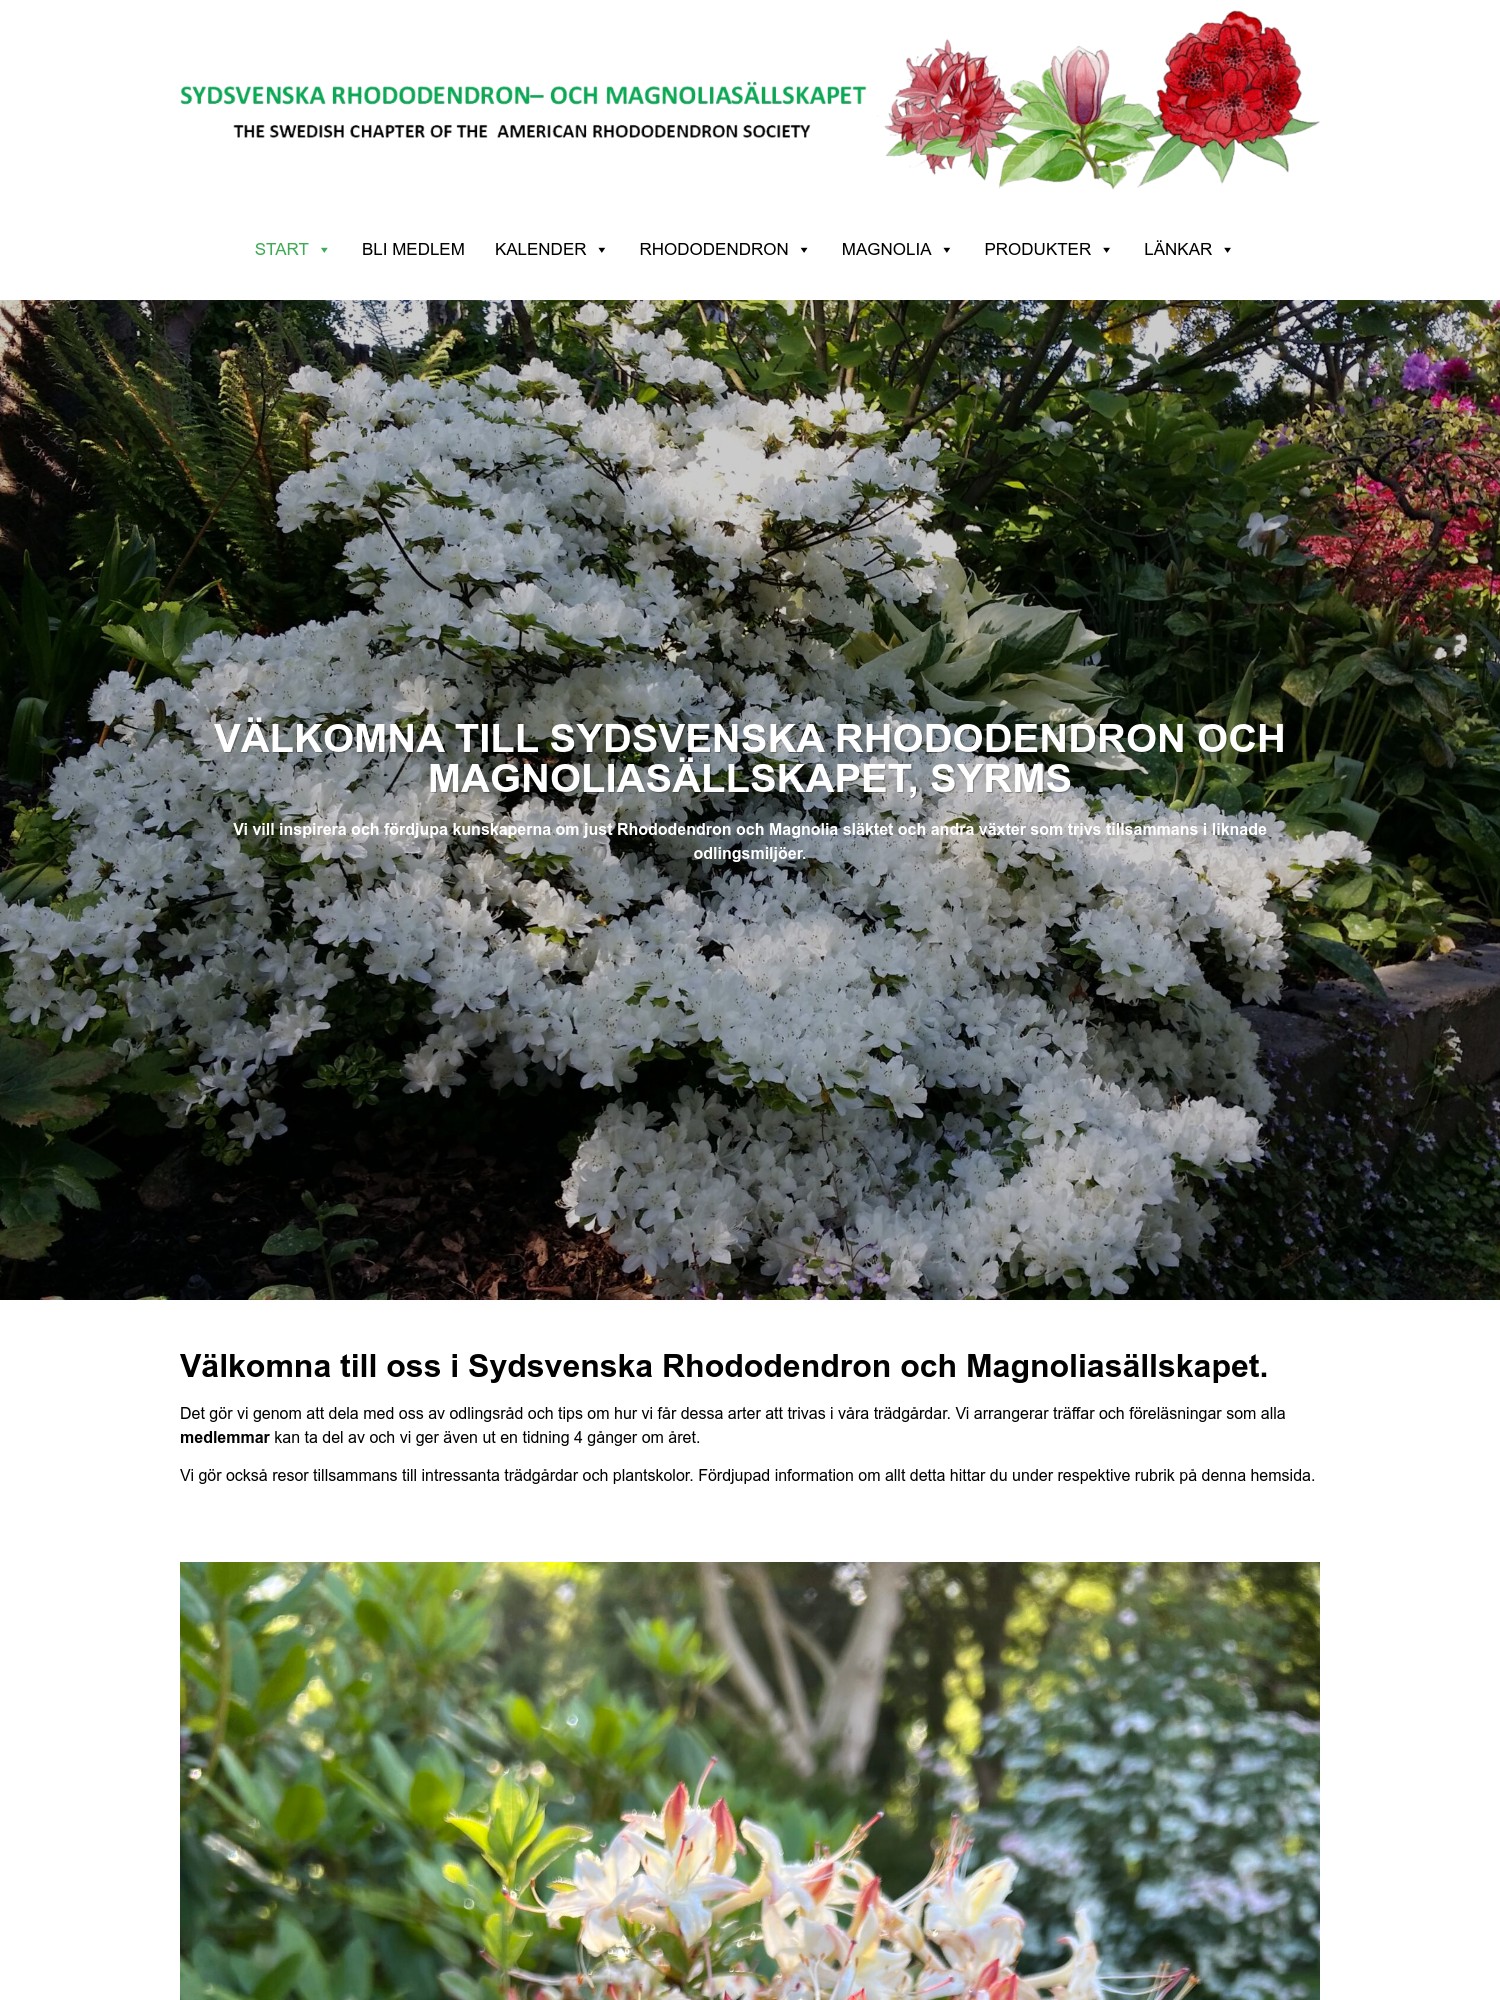 SYDSVENSKA RHODODENDRON OCH MAGNOLIASÄLLSKAPET, SYRMS – Föreningen vill inspirera och fördjupa kunskaperna om just Rhododendron och Magnolia släktet och andra växter som trivs tillsammans i liknade odli